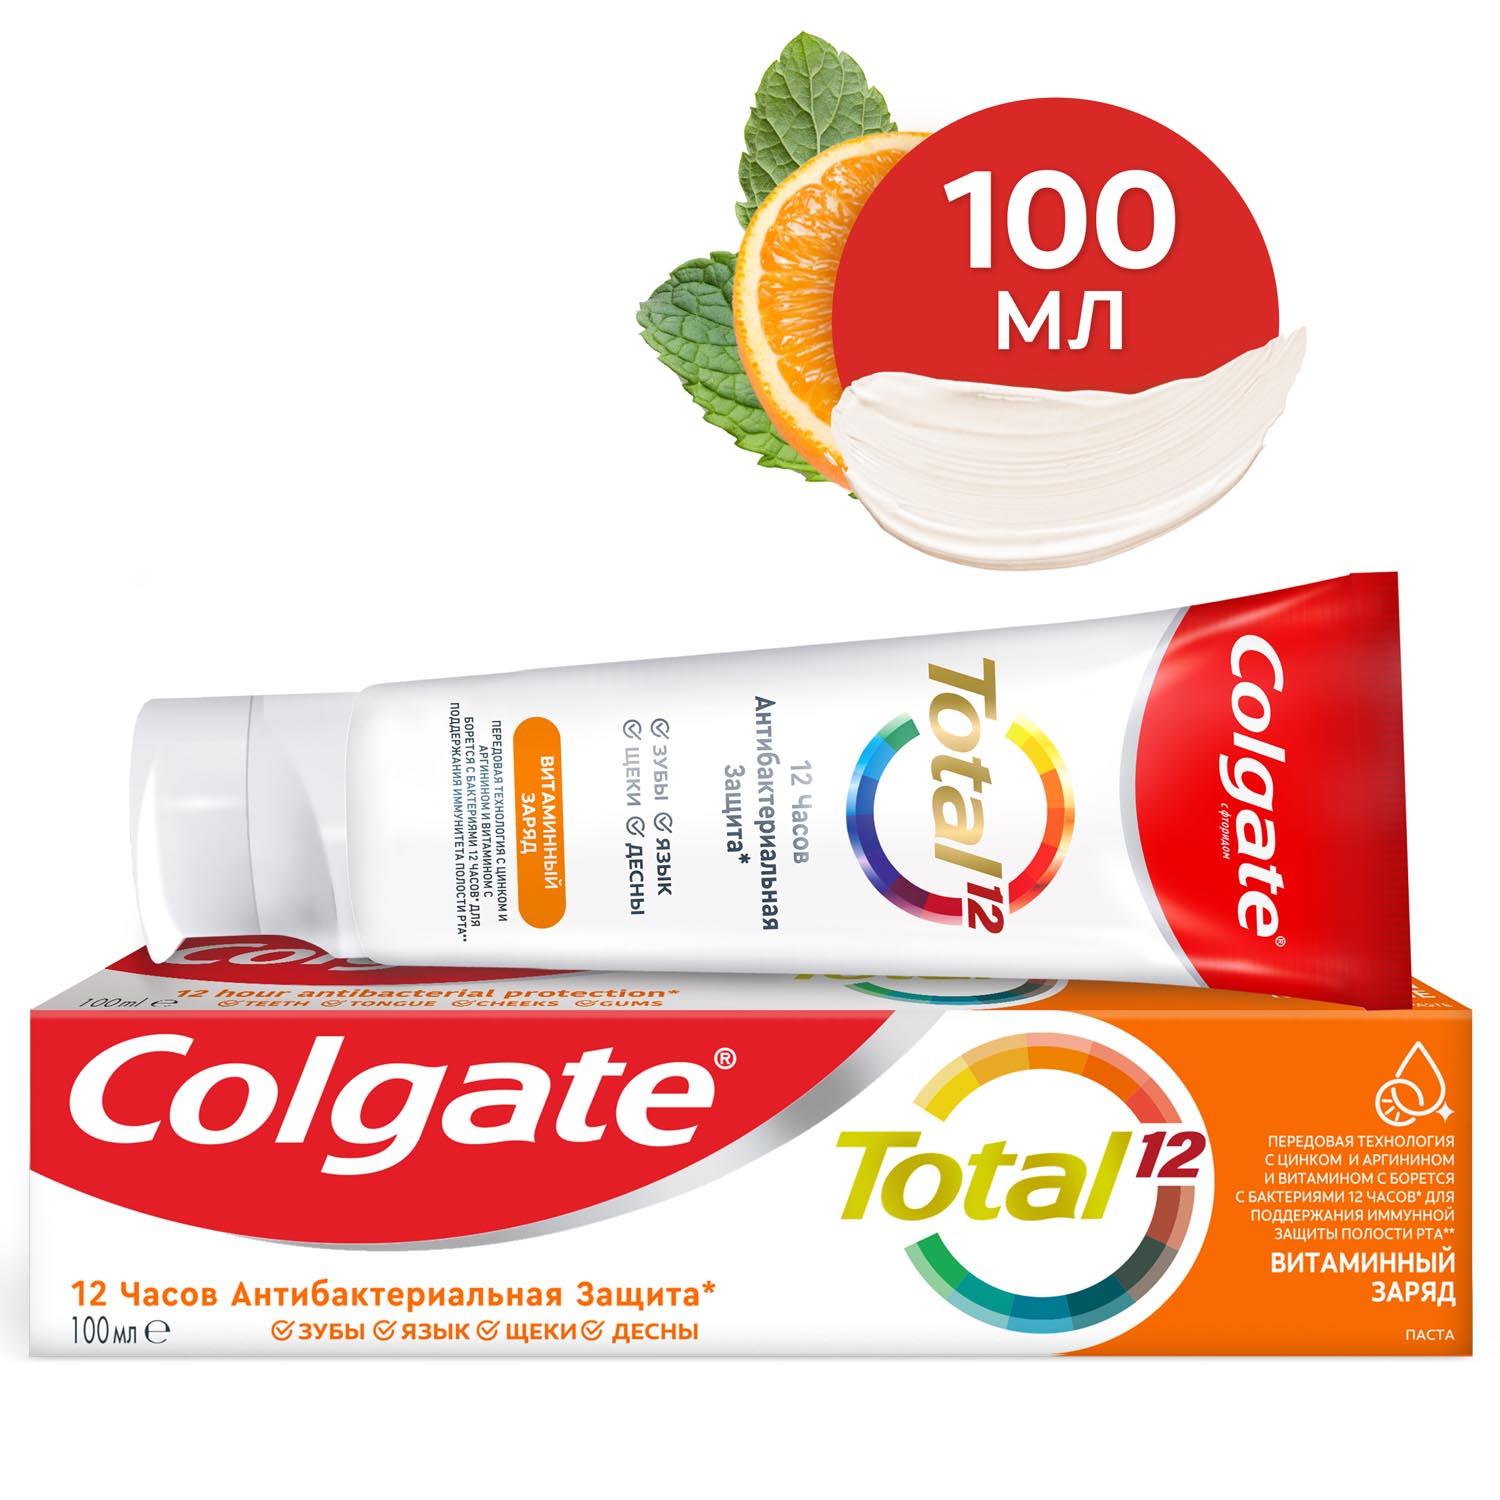 Зубная паста Colgate Total 12 Витаминный заряд с цинком и аргинином для комплексной антибактериальной защиты всей полости рта в течение 12 часов, 100 мл wp content